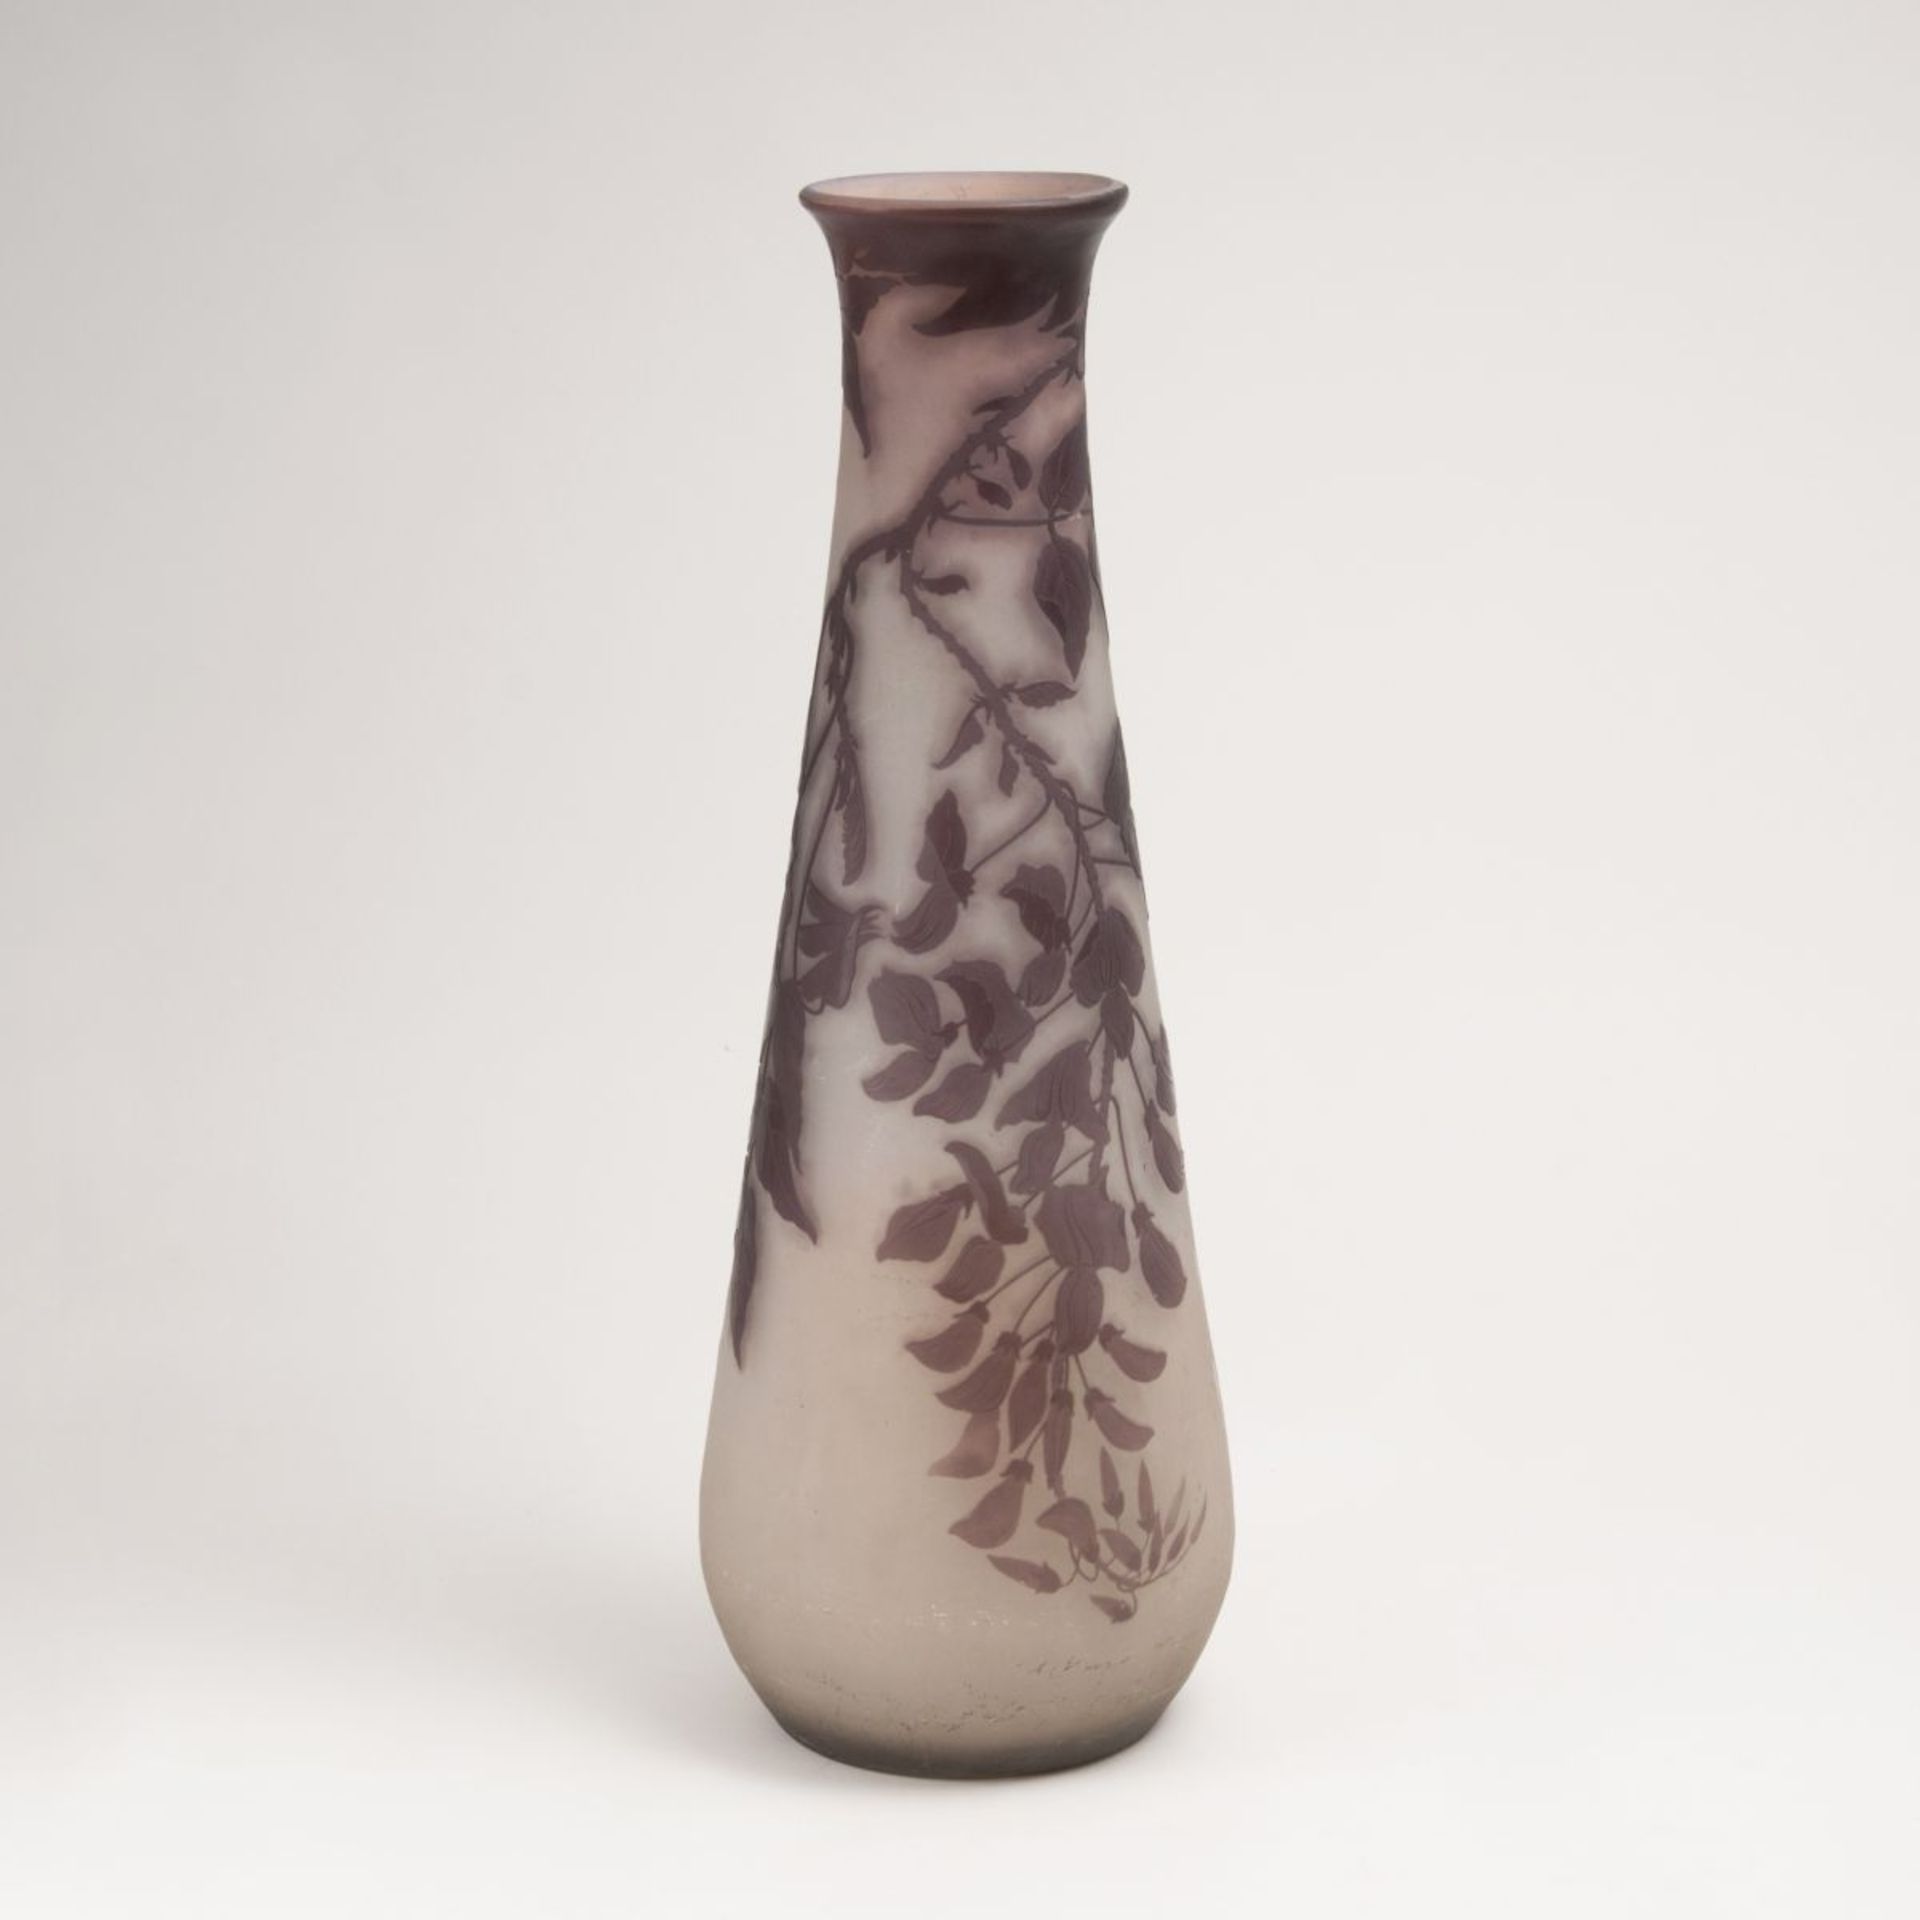 A Large Art Nouveau Gallé Vase with Wisteria<